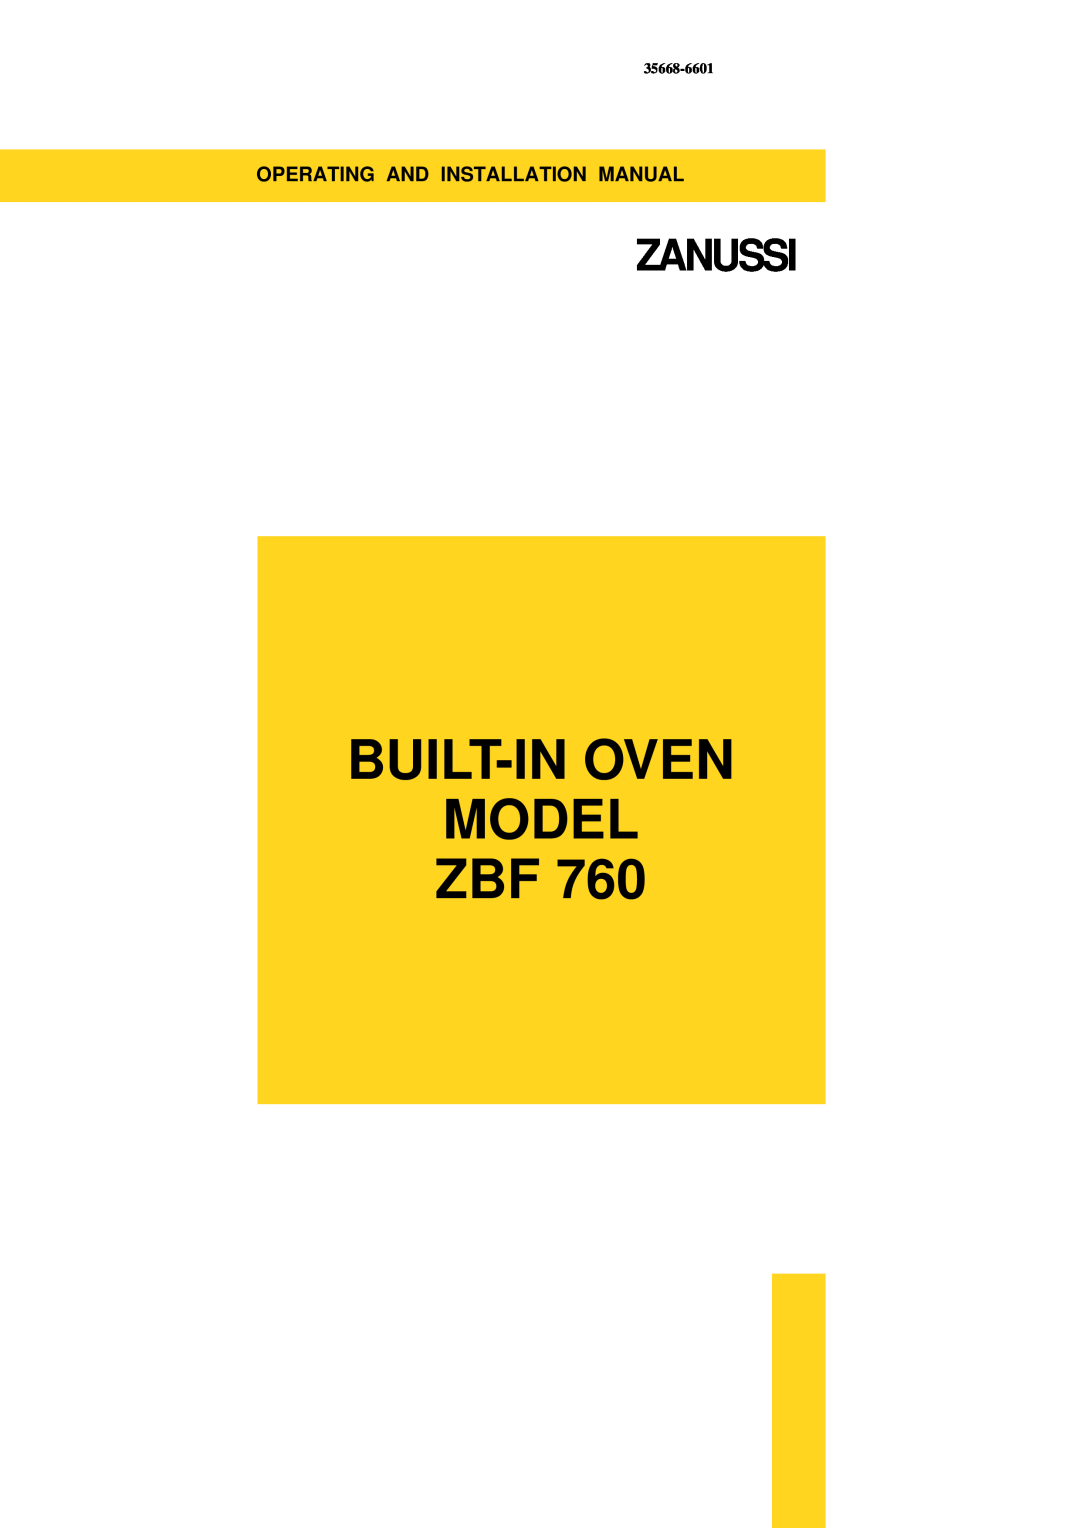 Zanussi ZBF 760 installation manual Built-In Oven Model Zbf, Zanussi, Operating And Installation Manual, 35668-6601 